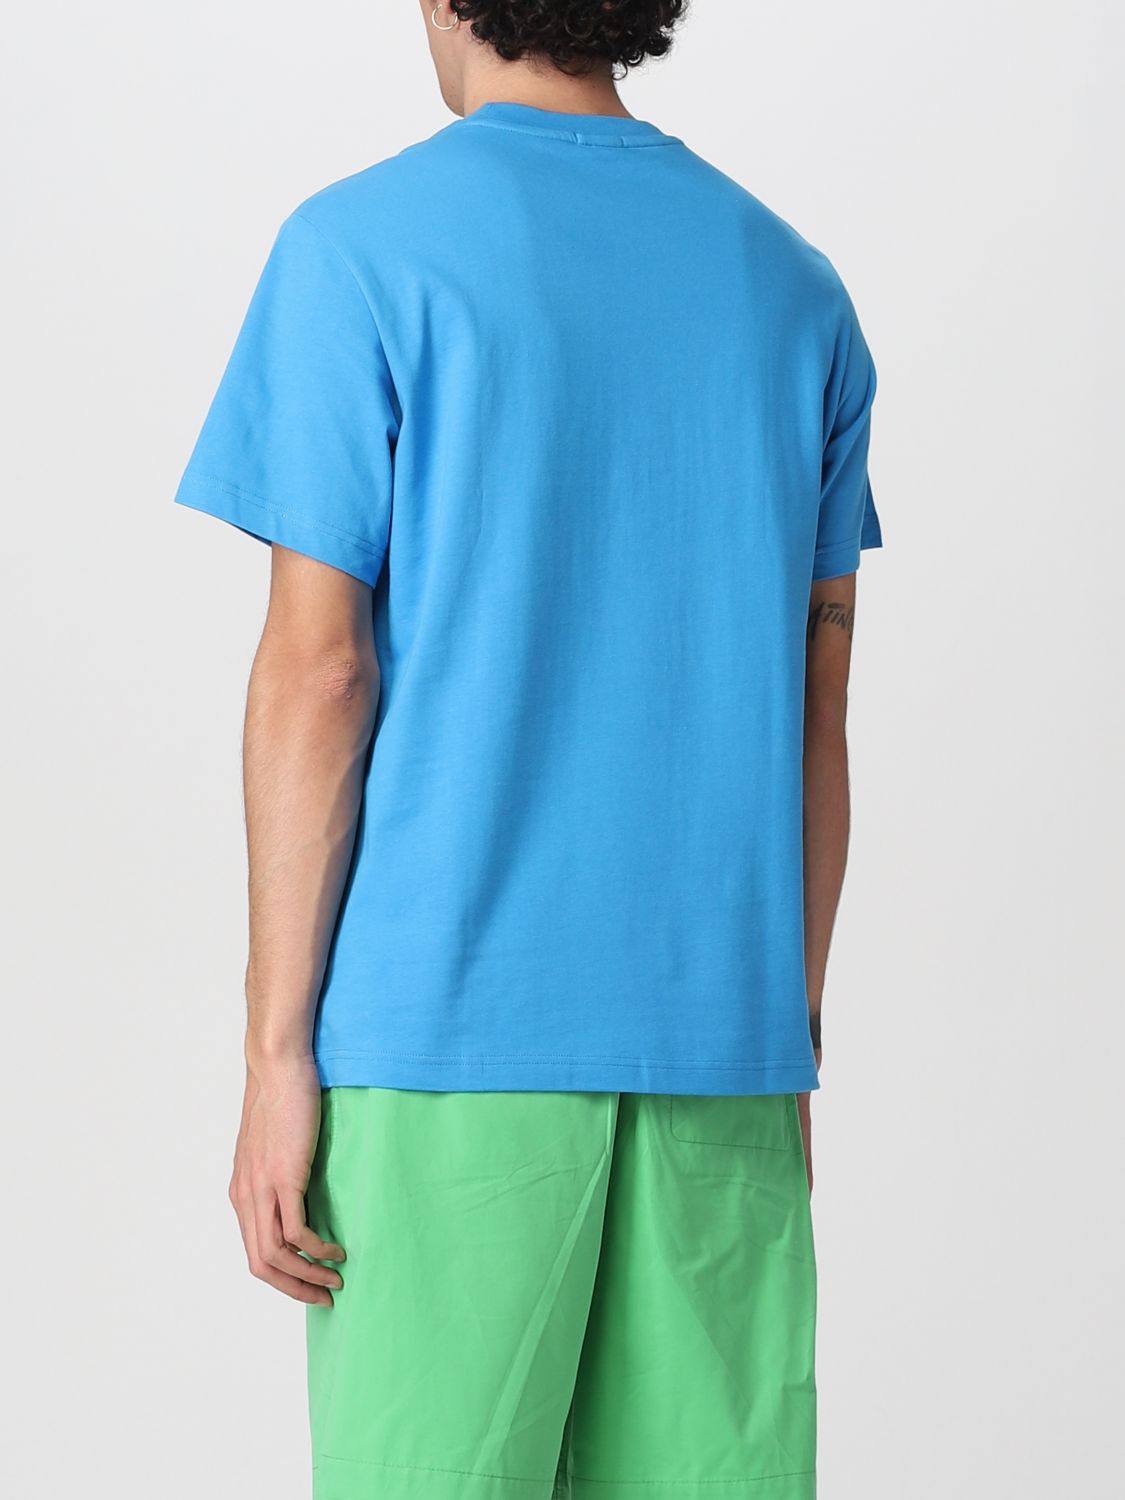 T-shirt Lacoste L!Ve: Lacoste L! Ve t-shirt in cotton with logo royal blue 2